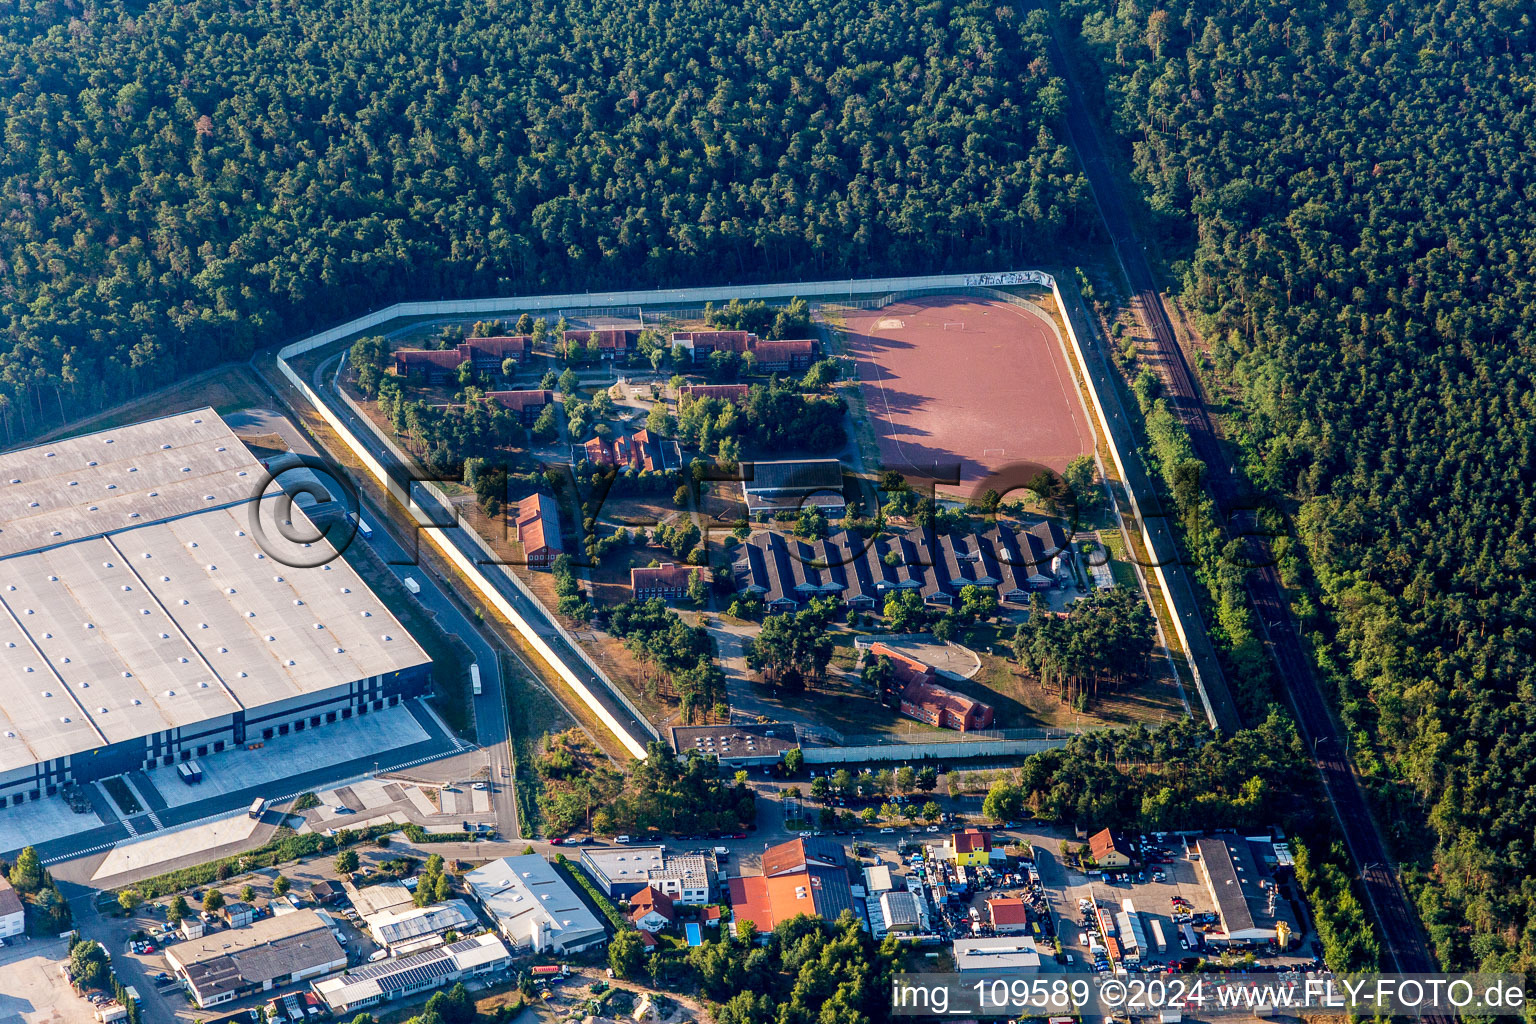 Photographie aérienne de Terrain de la prison et clôture de sécurité de l'établissement correctionnel, centre de détention pour mineurs Schifferstadt à Schifferstadt dans le département Rhénanie-Palatinat, Allemagne